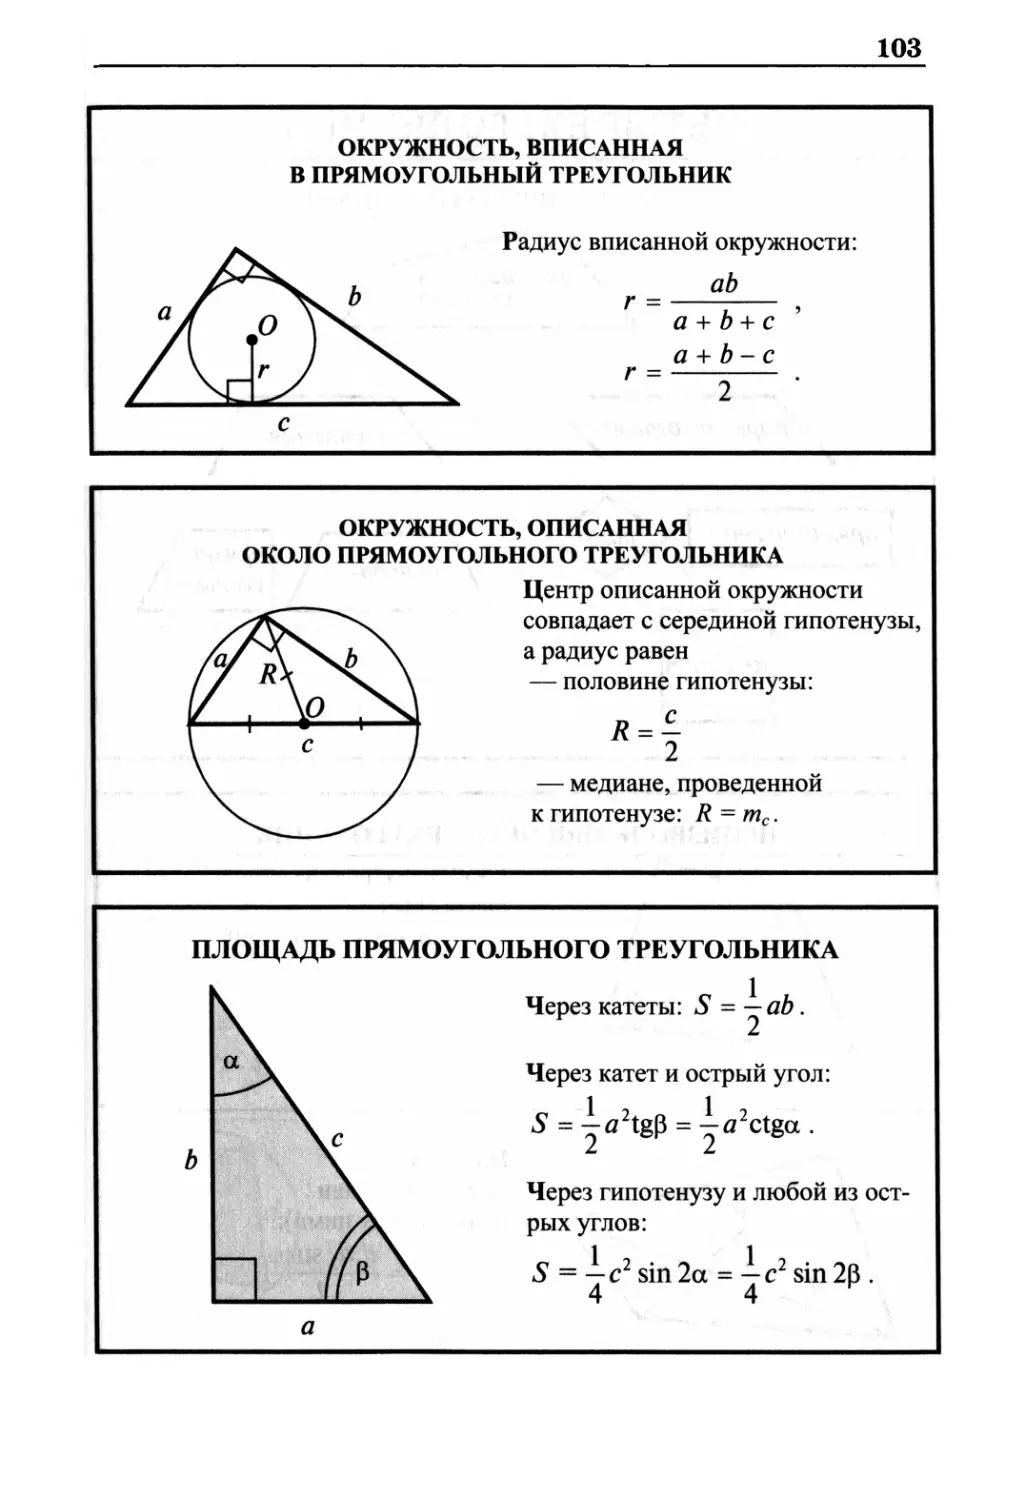 Окружность, вписанная в прямоугольный треугольник
Окружность, описанная около прямоугольного треугольника
Площадь прямоугольного треугольника